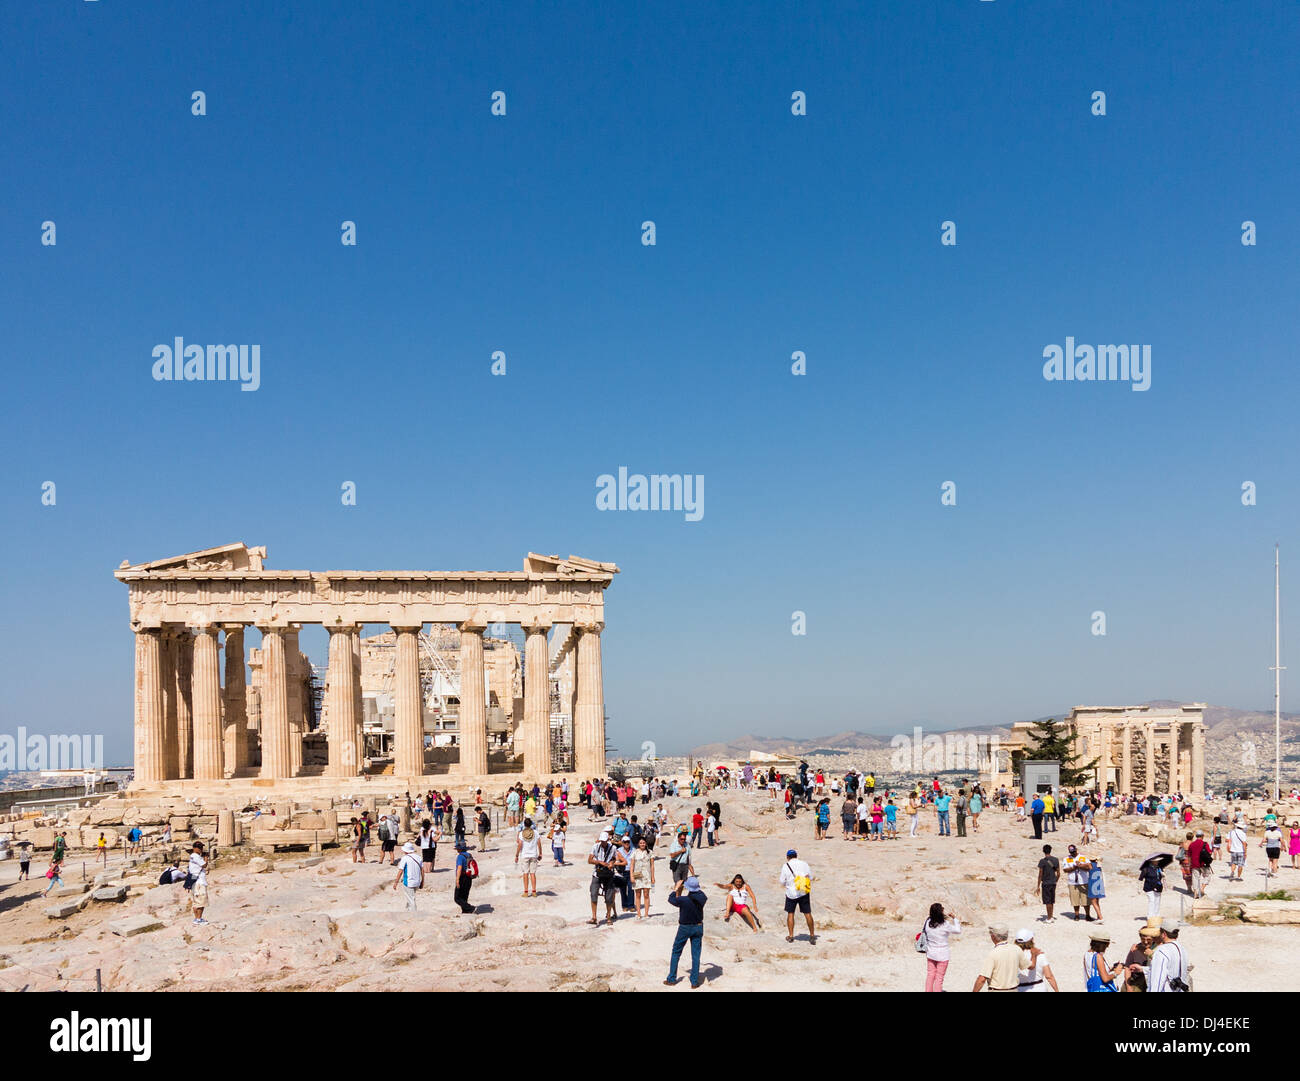 Acropole, Athènes, Grèce - avec des foules de touristes se rendant sur le site de l'ancienne Grèce Parthénon et l'Erechtheion Banque D'Images